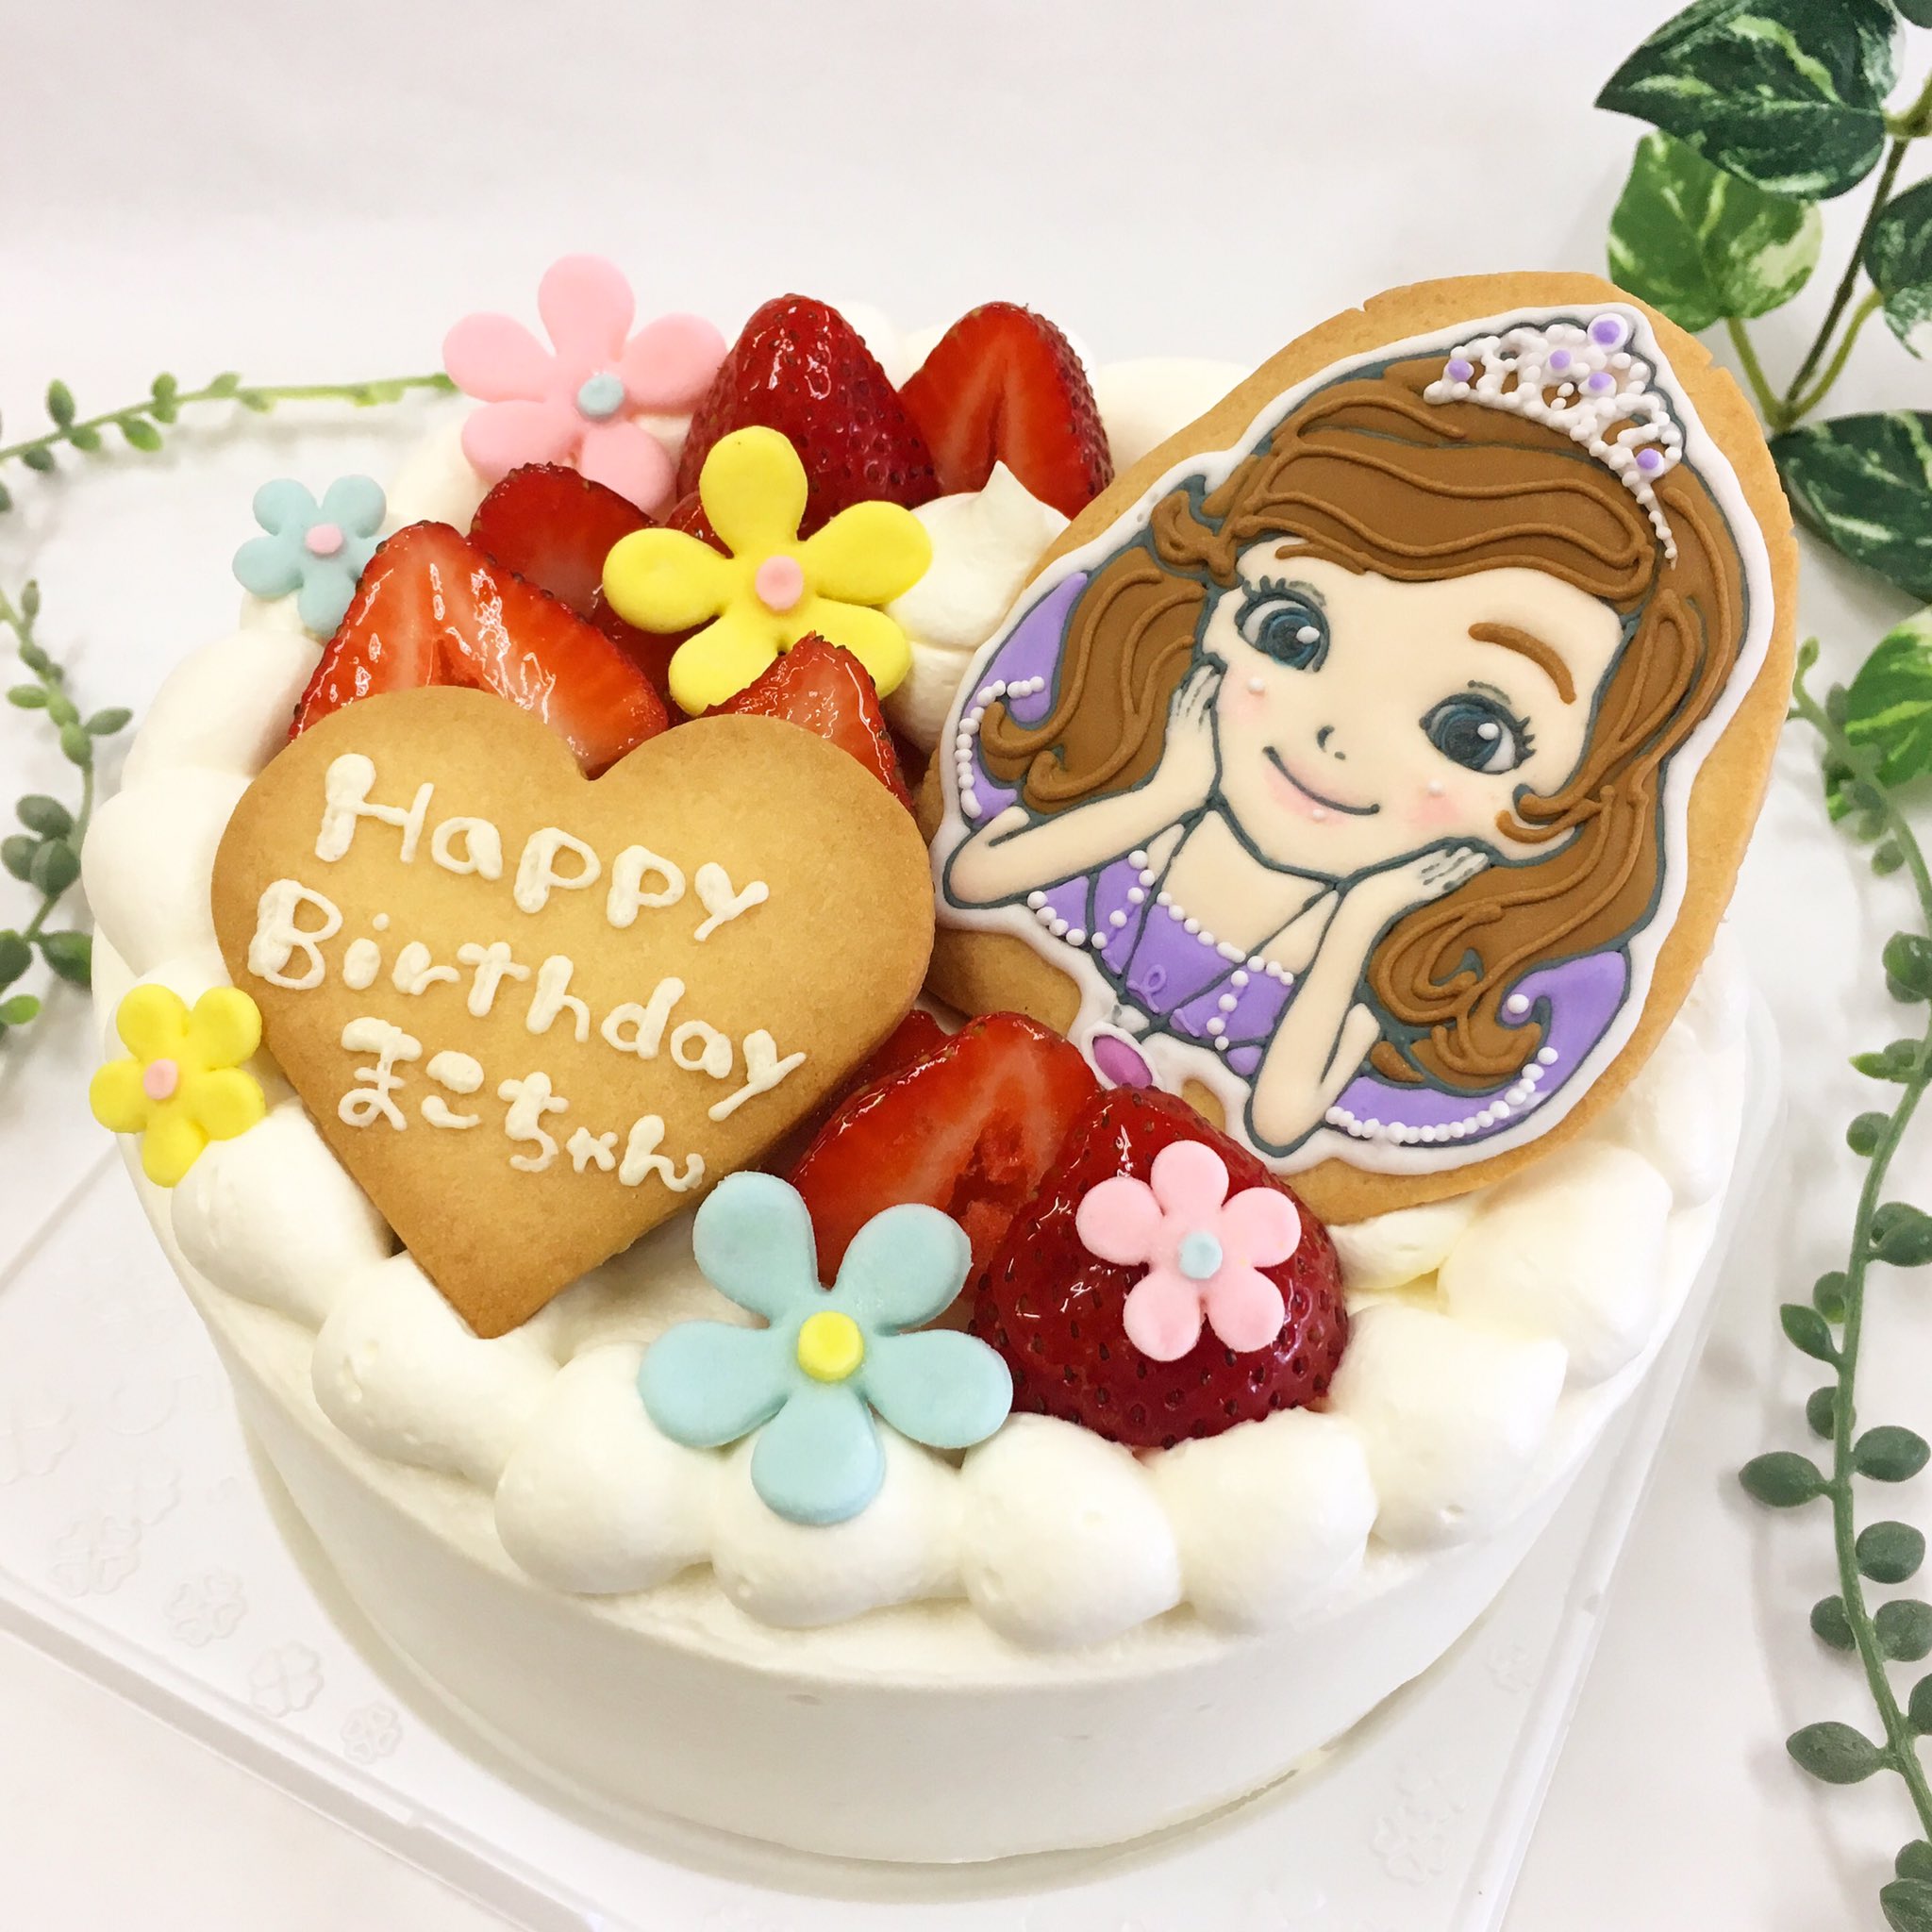 サン ヴェルジェ Na Twitteri プリンセスソフィアのアイシングクッキー お花に囲まれてとっても可愛いケーキです ありがとうございました Saintverger サンヴェルジェ キャラクターケーキ アイシングクッキー プリンセスソフィア ソフィアケーキ